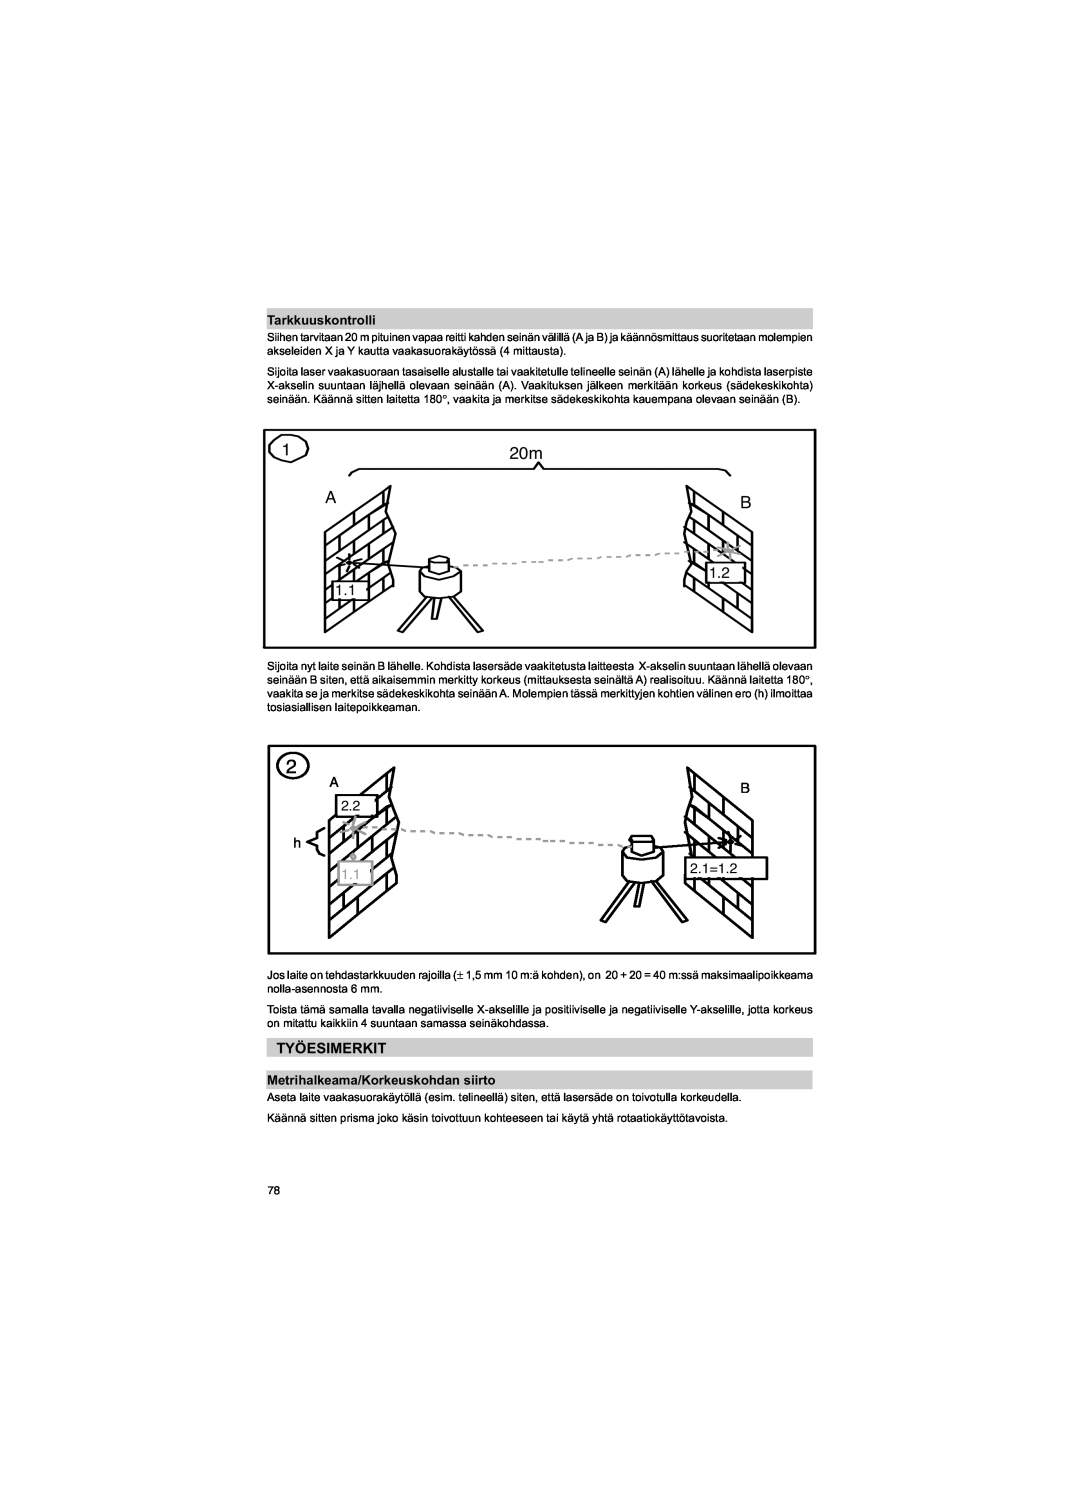 Trimble Outdoors HV301 manual Työesimerkit, Tarkkuuskontrolli, Metrihalkeama/Korkeuskohdan siirto, A, B 2.1=1.2 